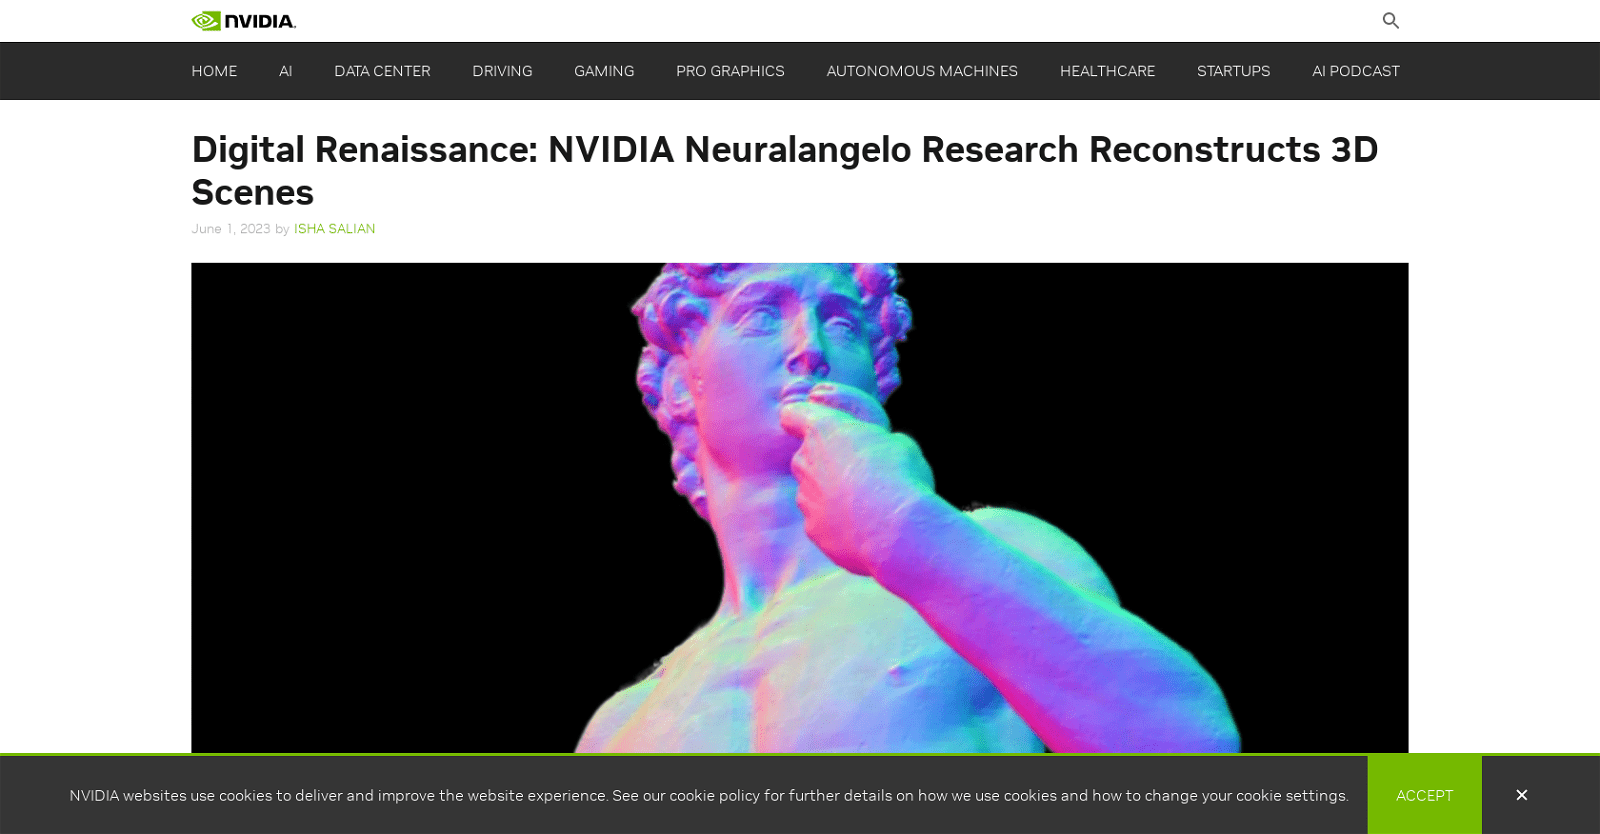 Neuralangelo by NVIDIA icon